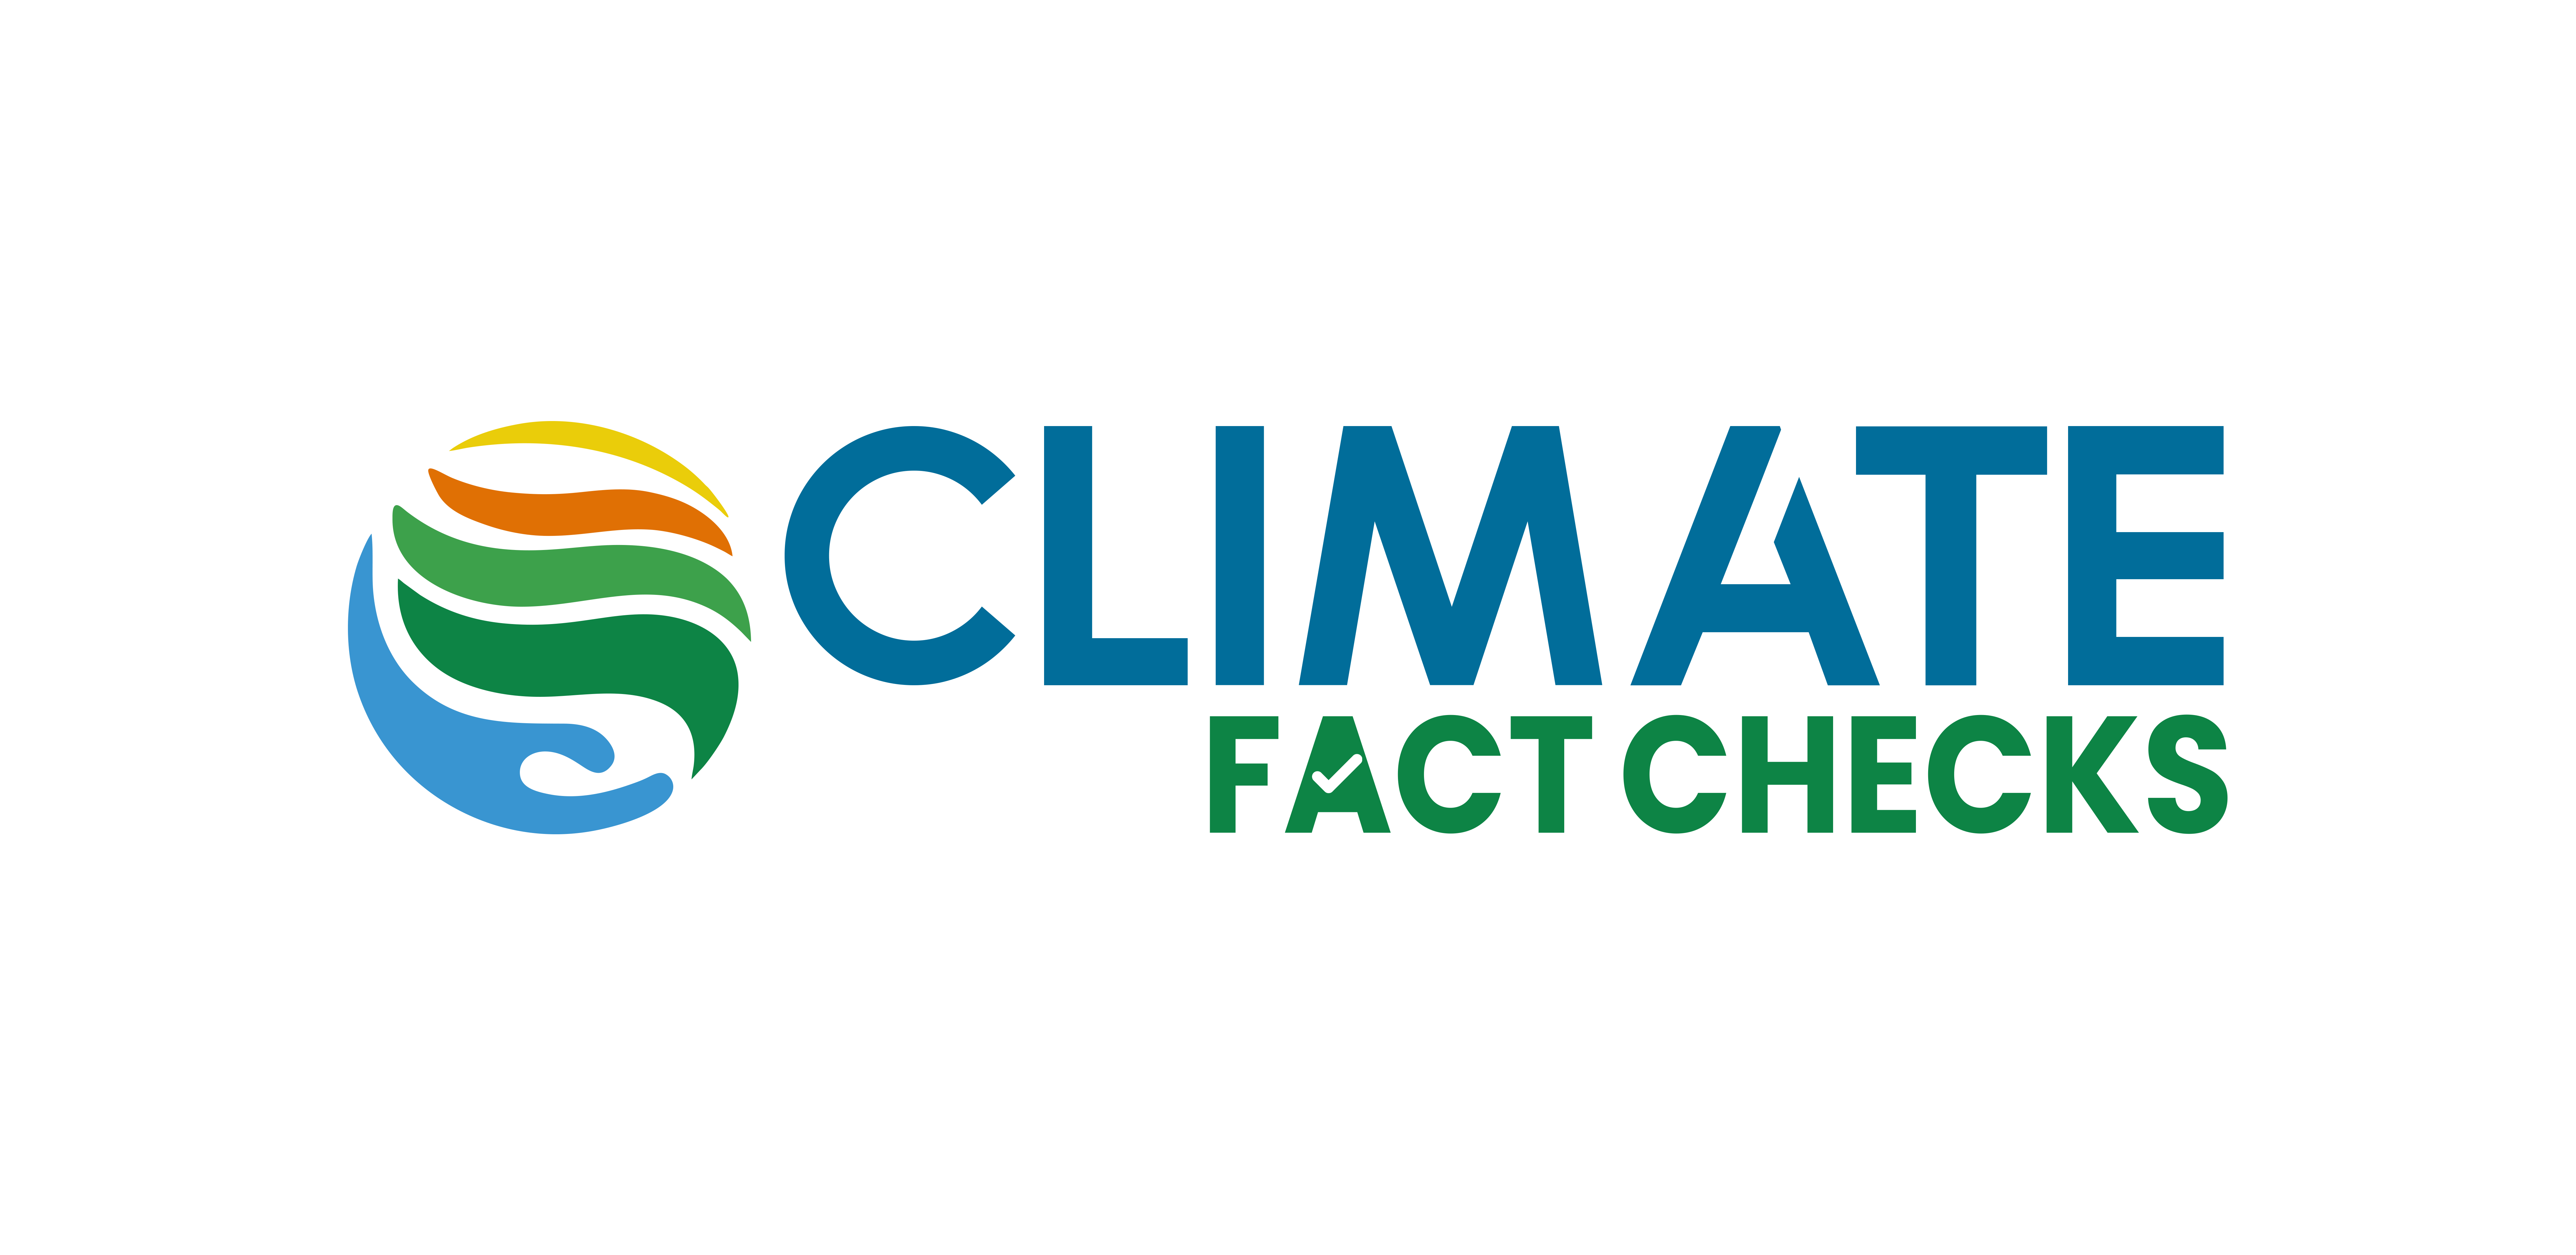 Malayalam | Climate Fact Checks